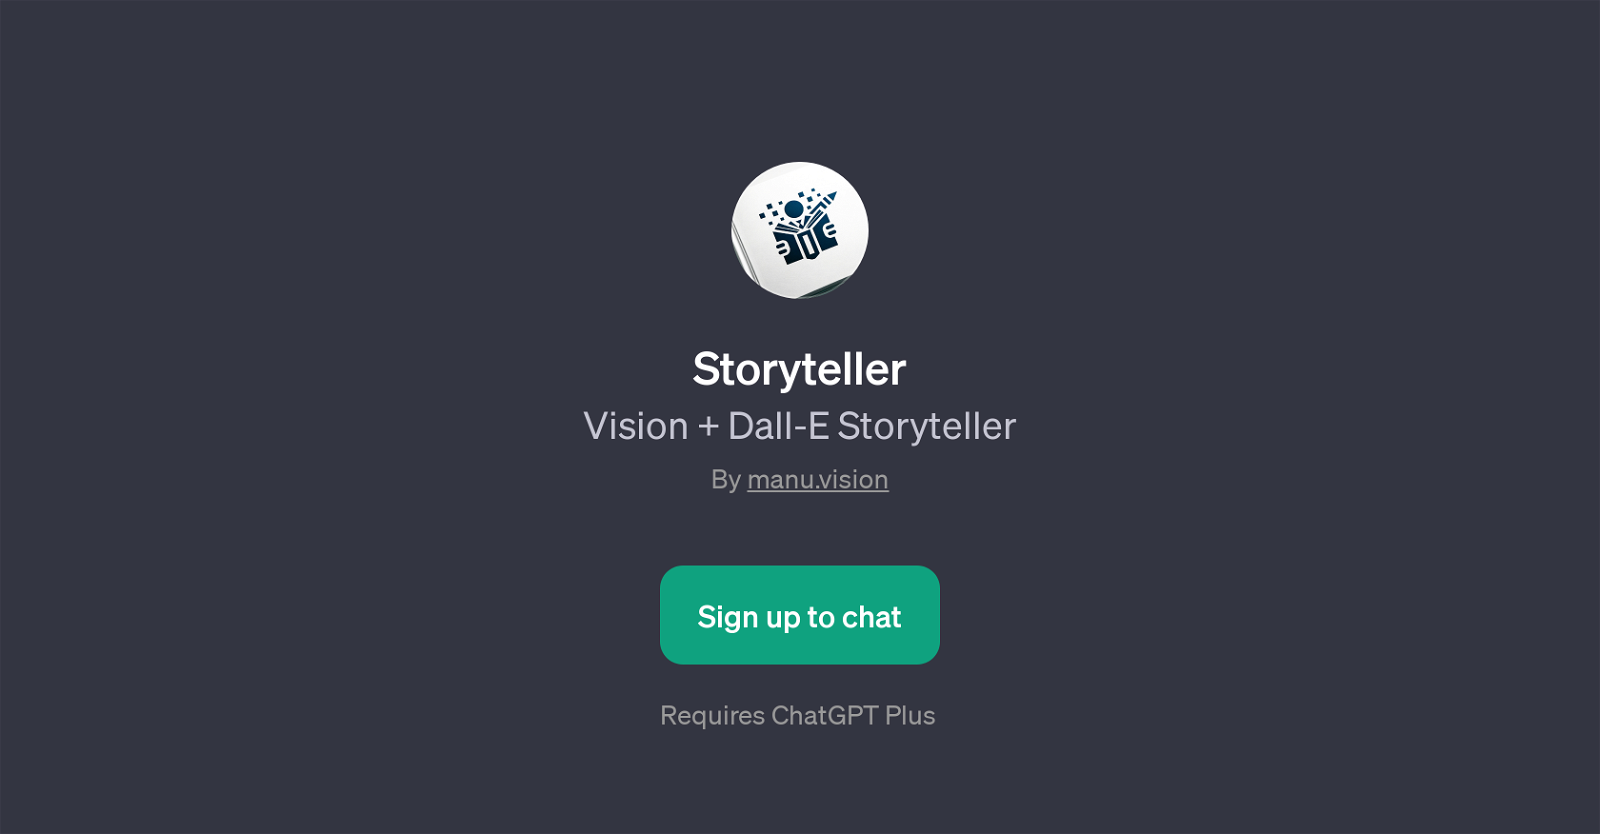 Storyteller website